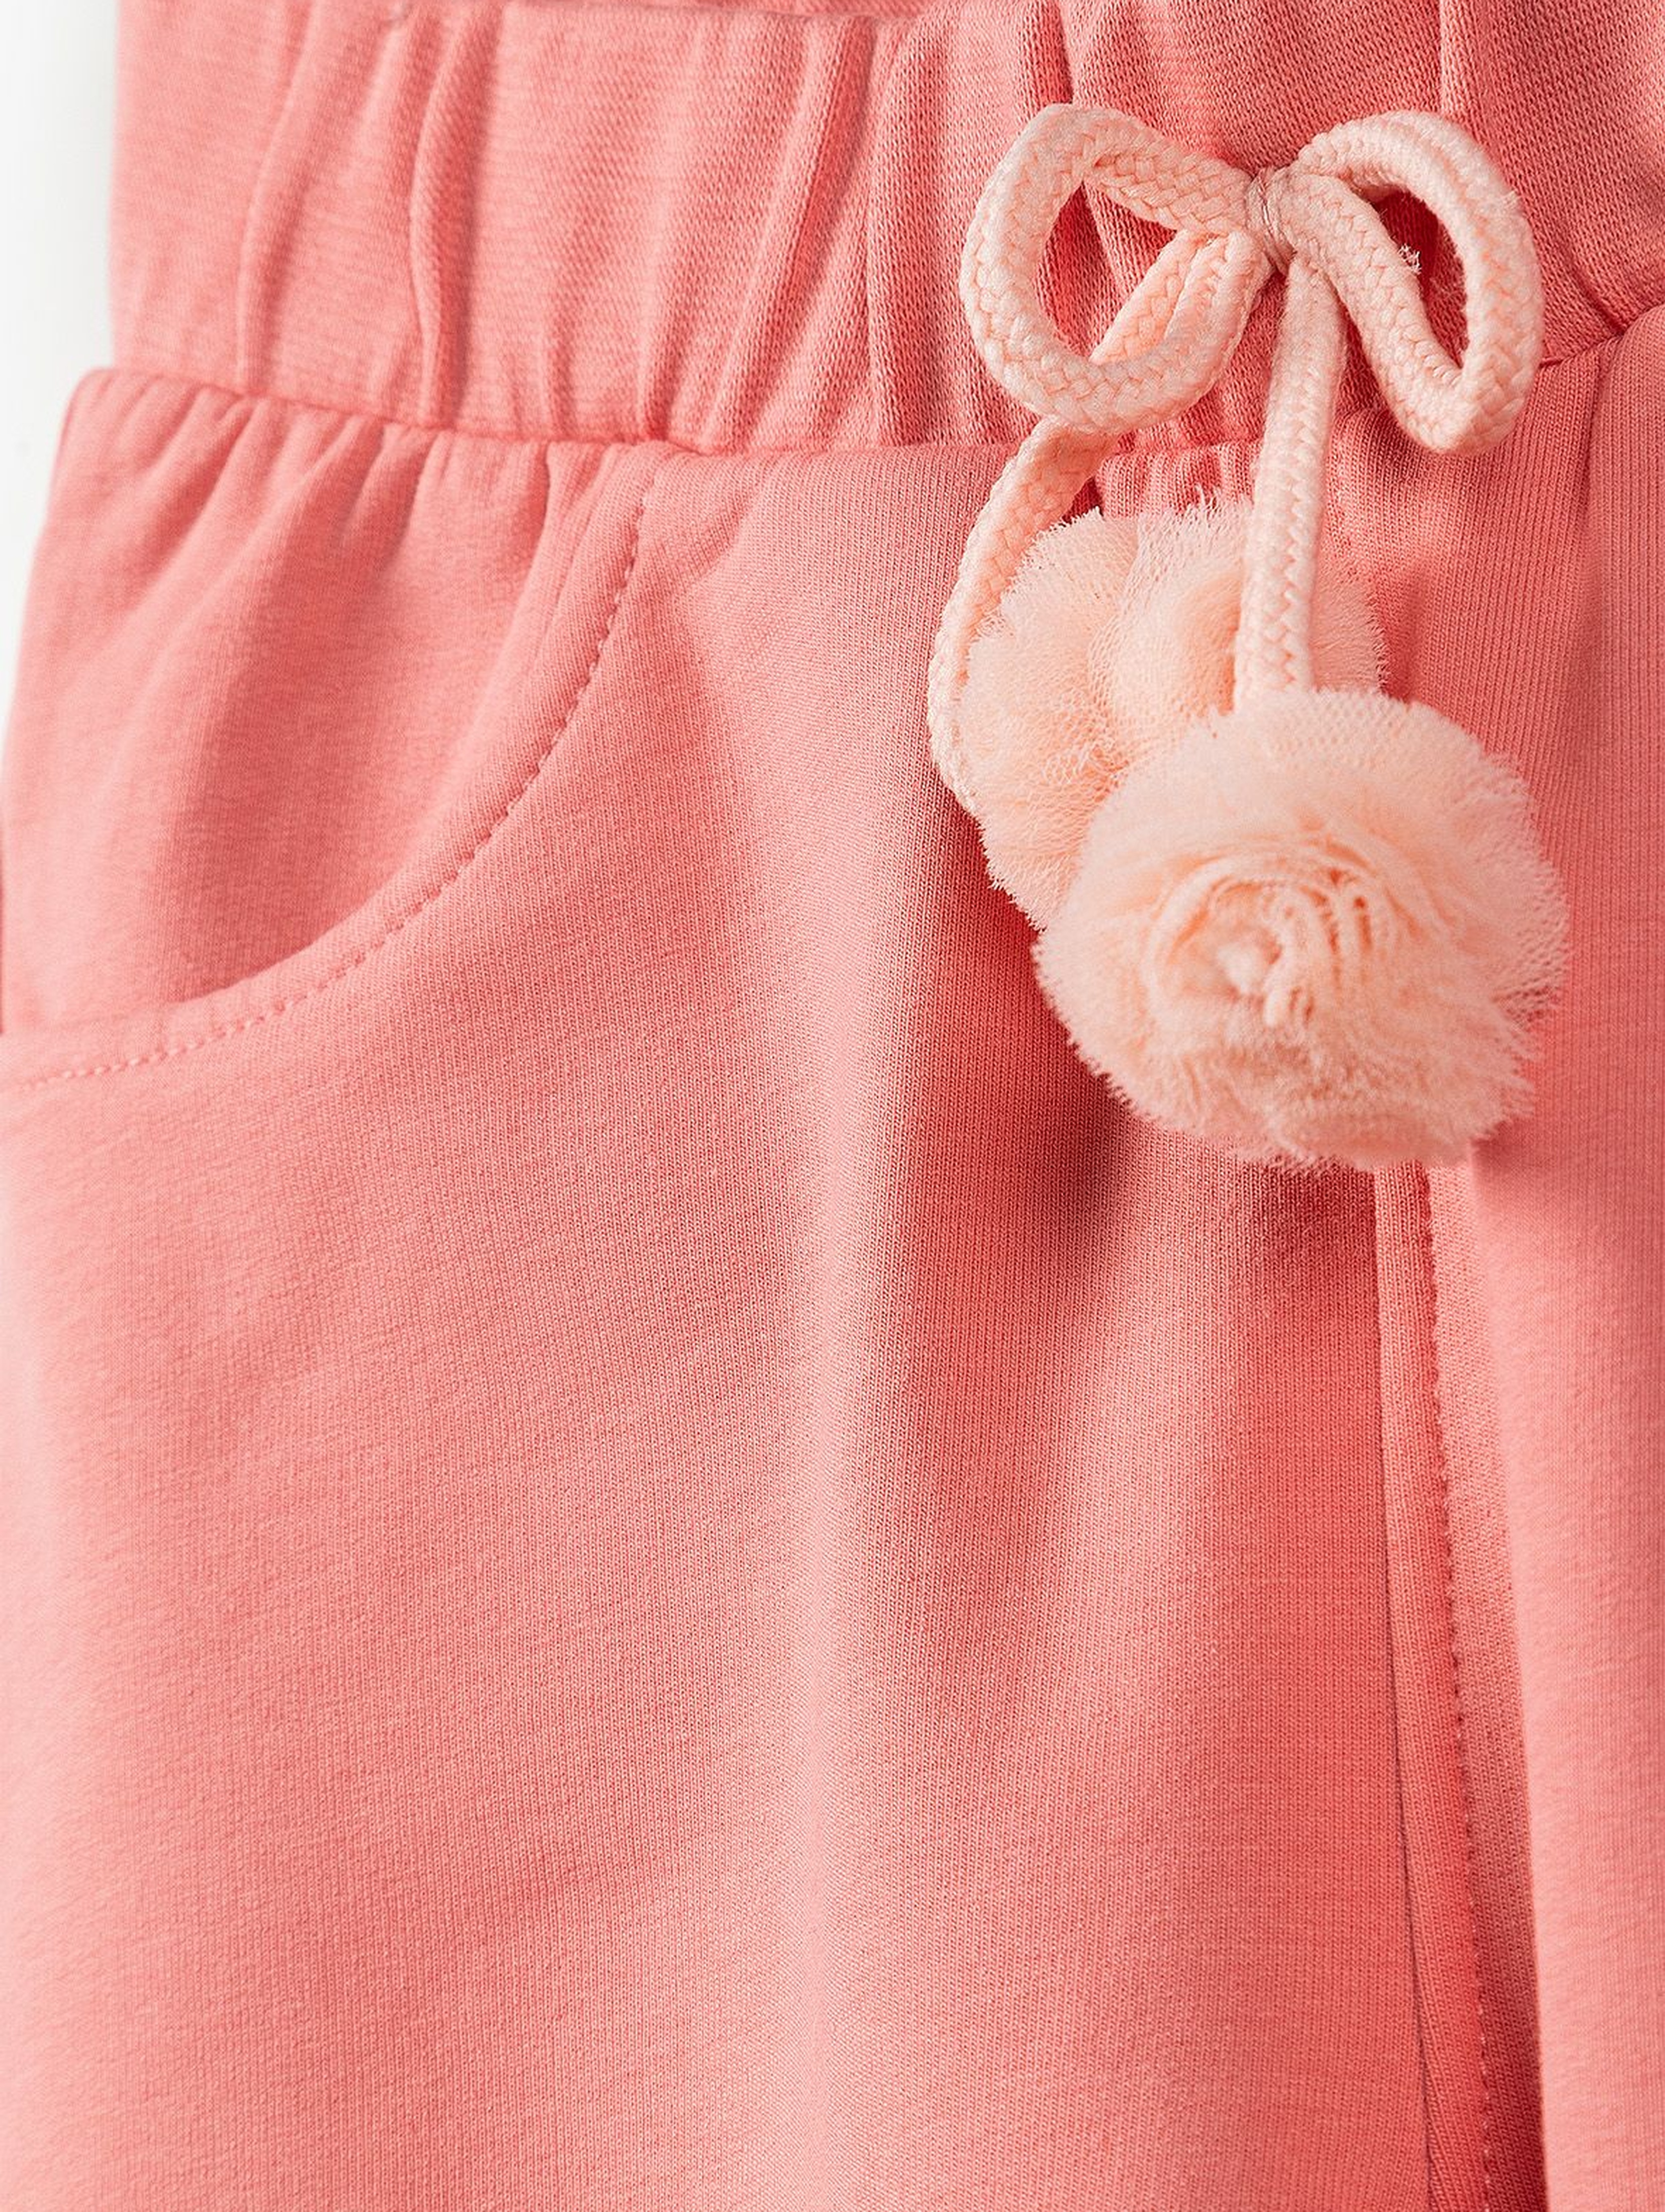 Spodnie dresowe dla dziewczynki - różowe